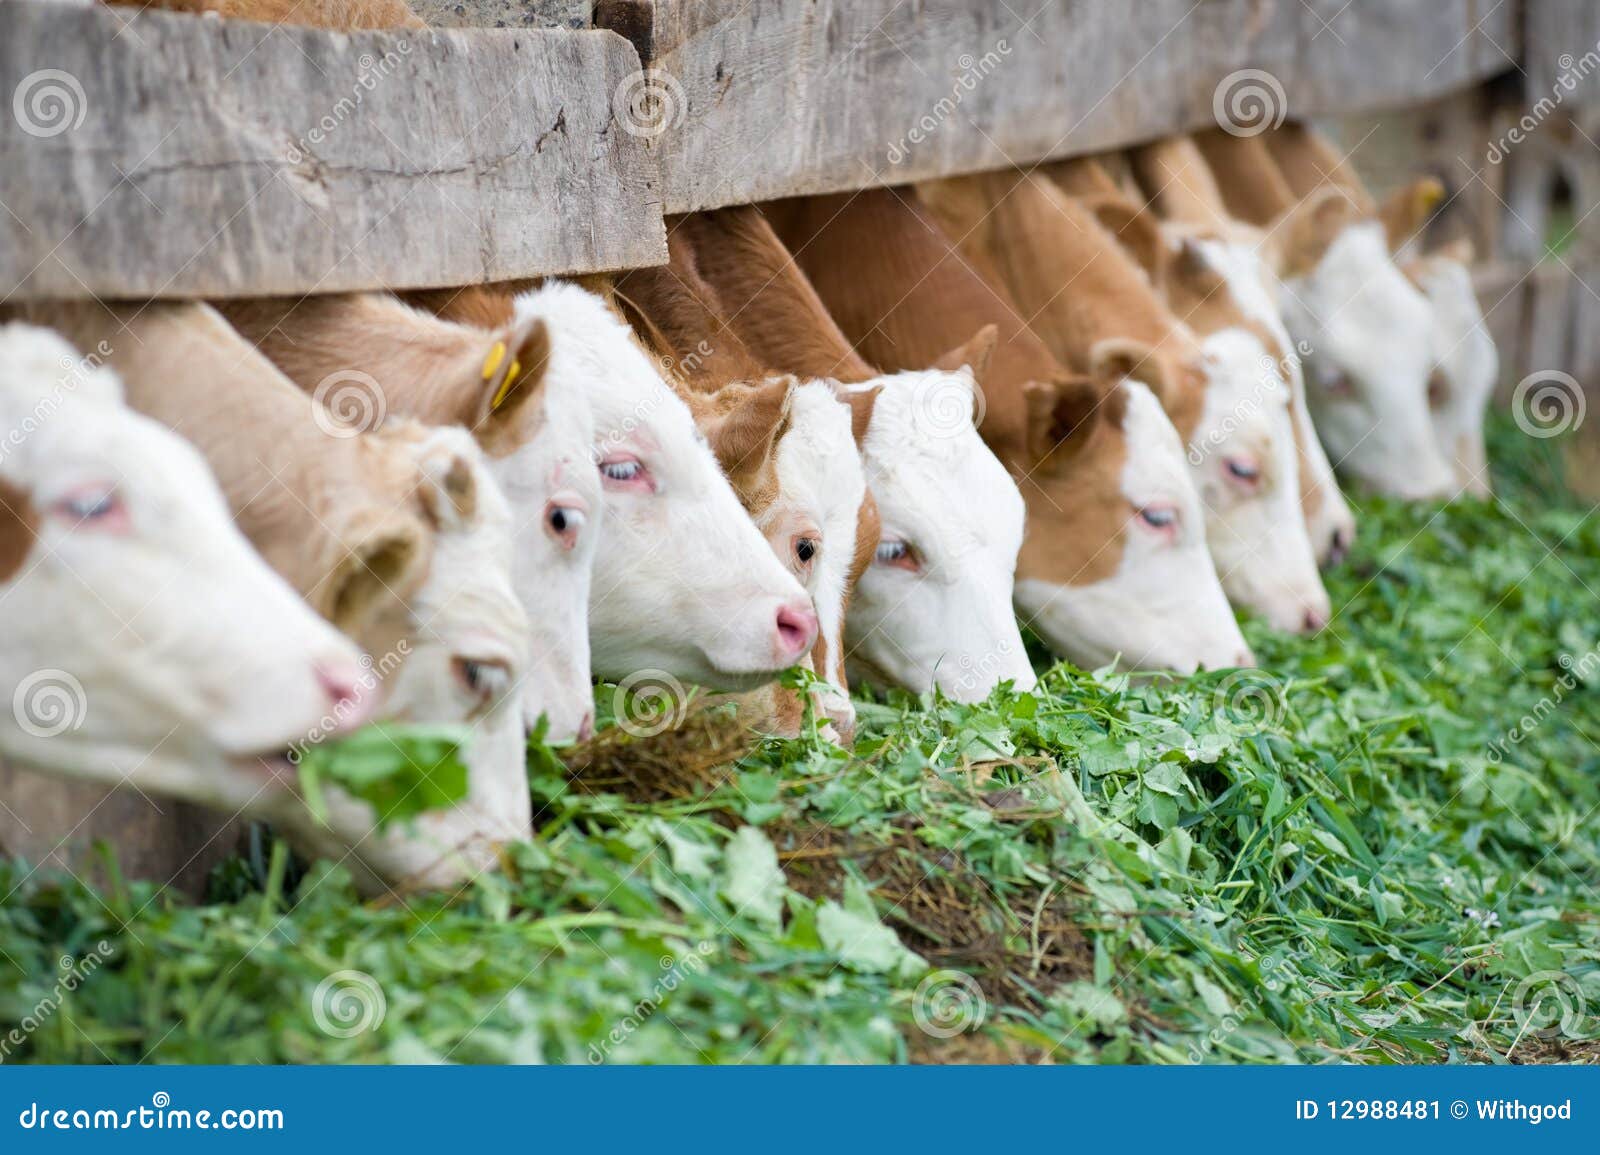 calves eating green rich fodder